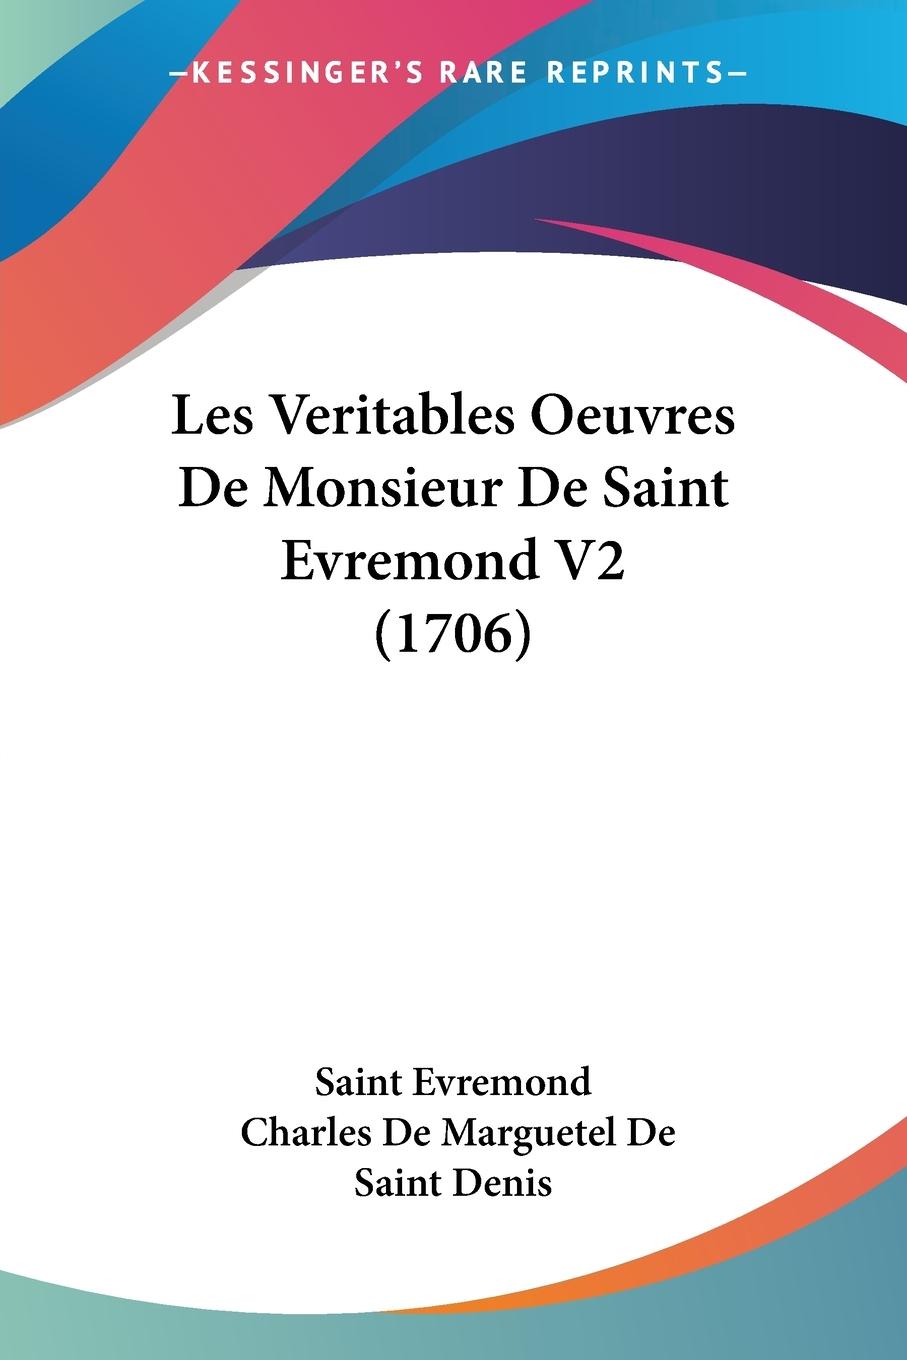 Les Veritables Oeuvres De Monsieur De Saint Evremond V2 (1706) - Saint Evremond De Saint Denis, Charles De Marguetel